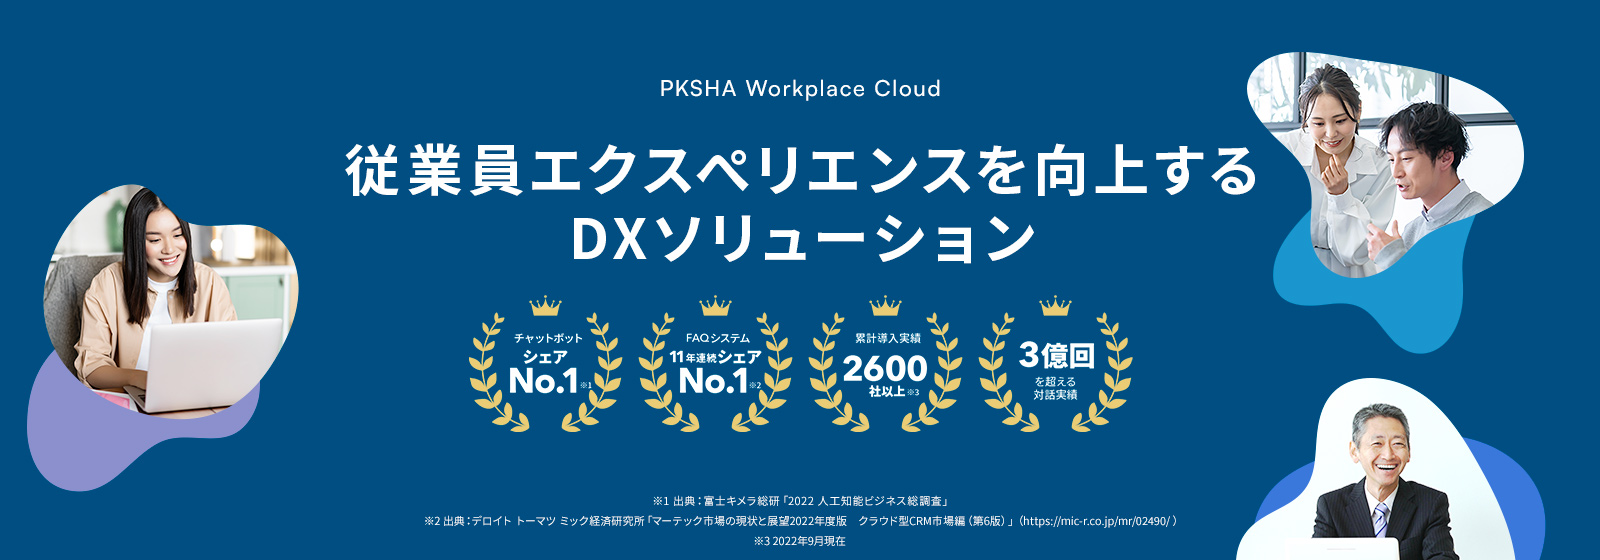 PKSHA Workplace Cloud 従業員エクスペリエンスを向上するDXソリューション